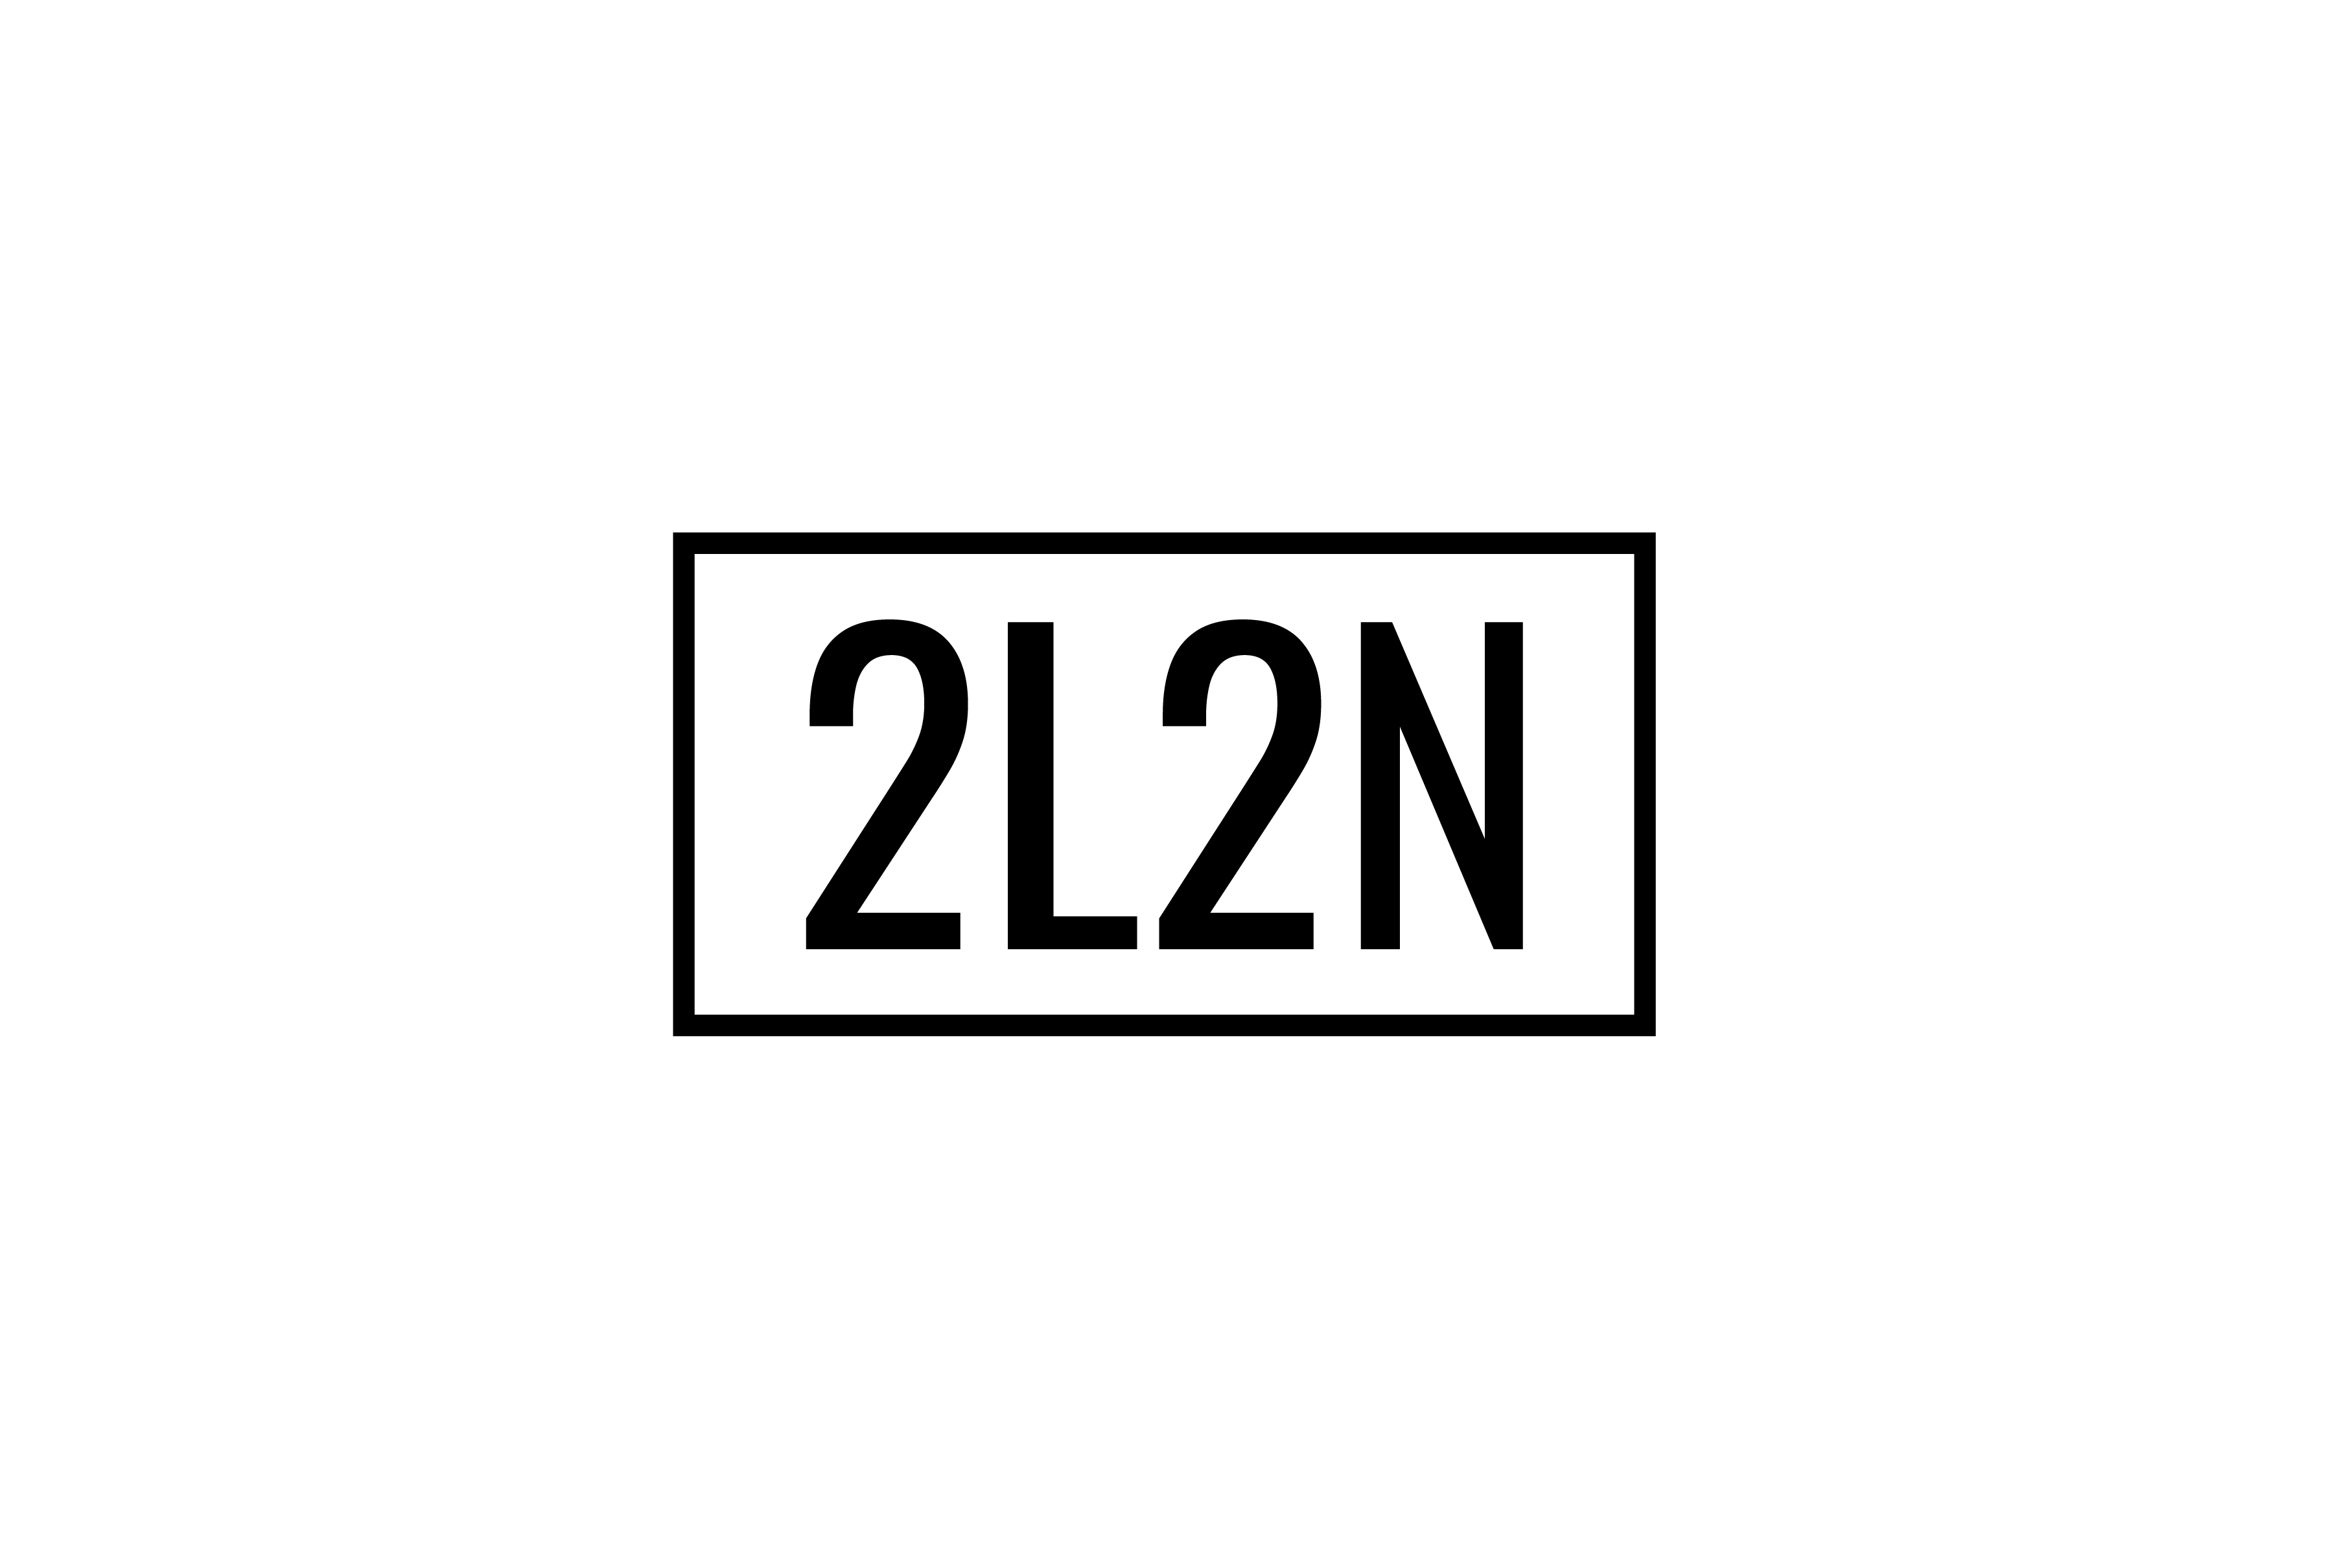 2L2N